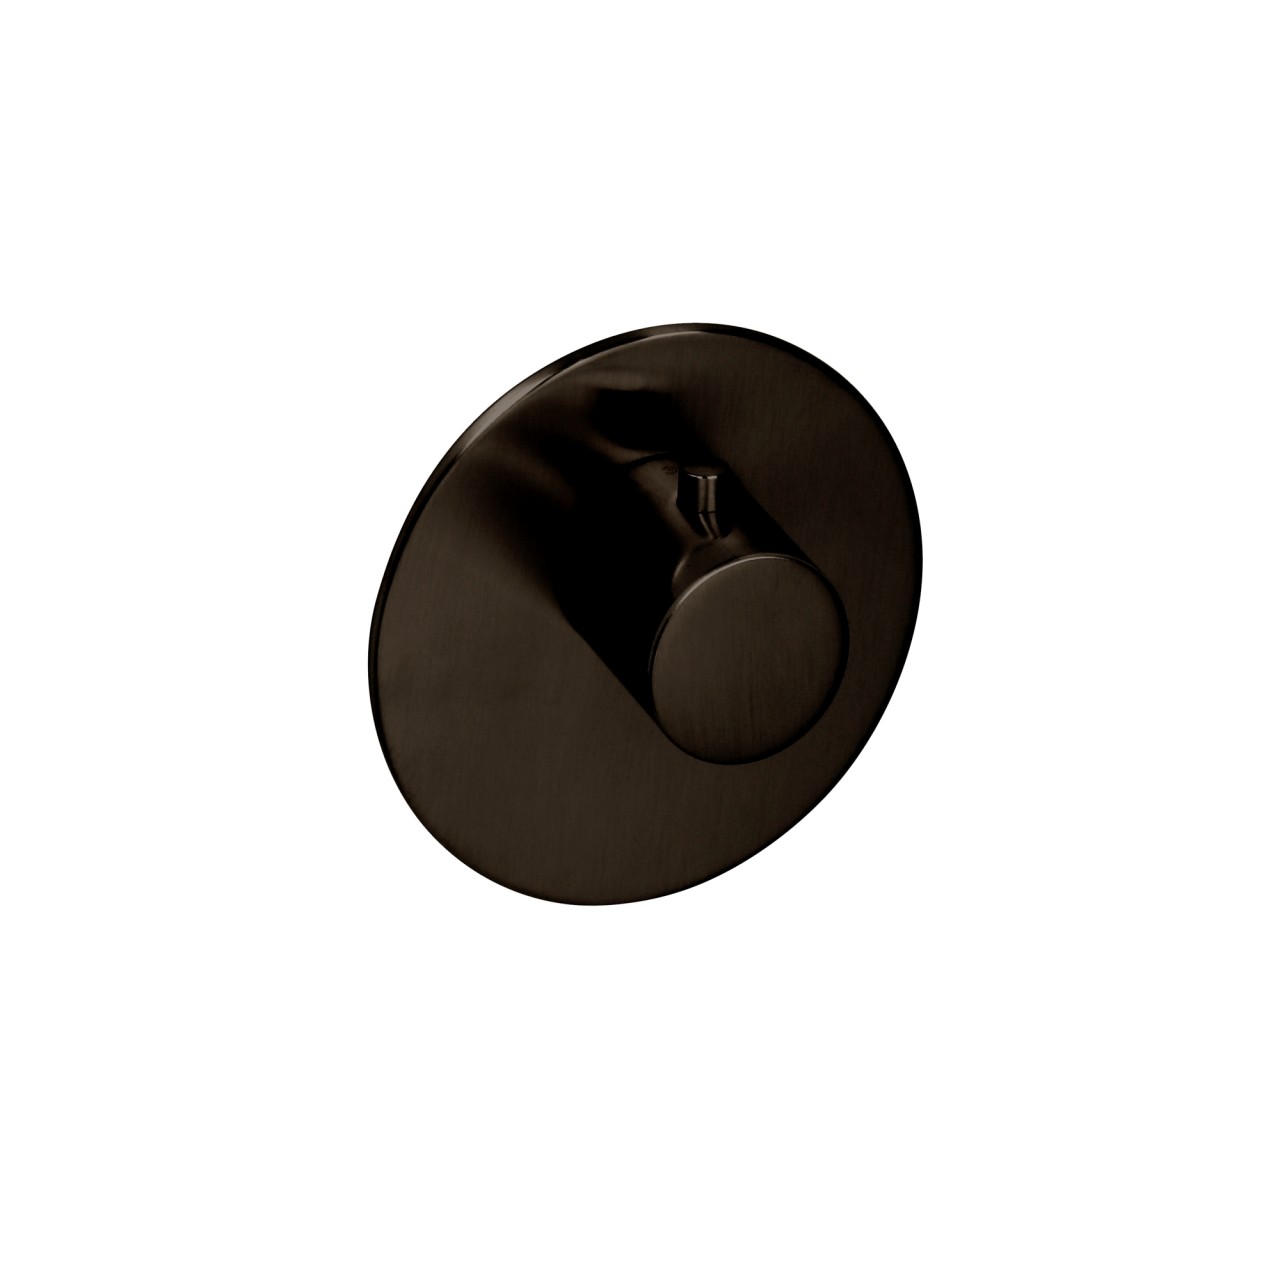 Herzbach xl Vario farbset für thermo rund griff rund black, Black Steel, 21.500100.1.40 21.500100.1.40 von Herzbach